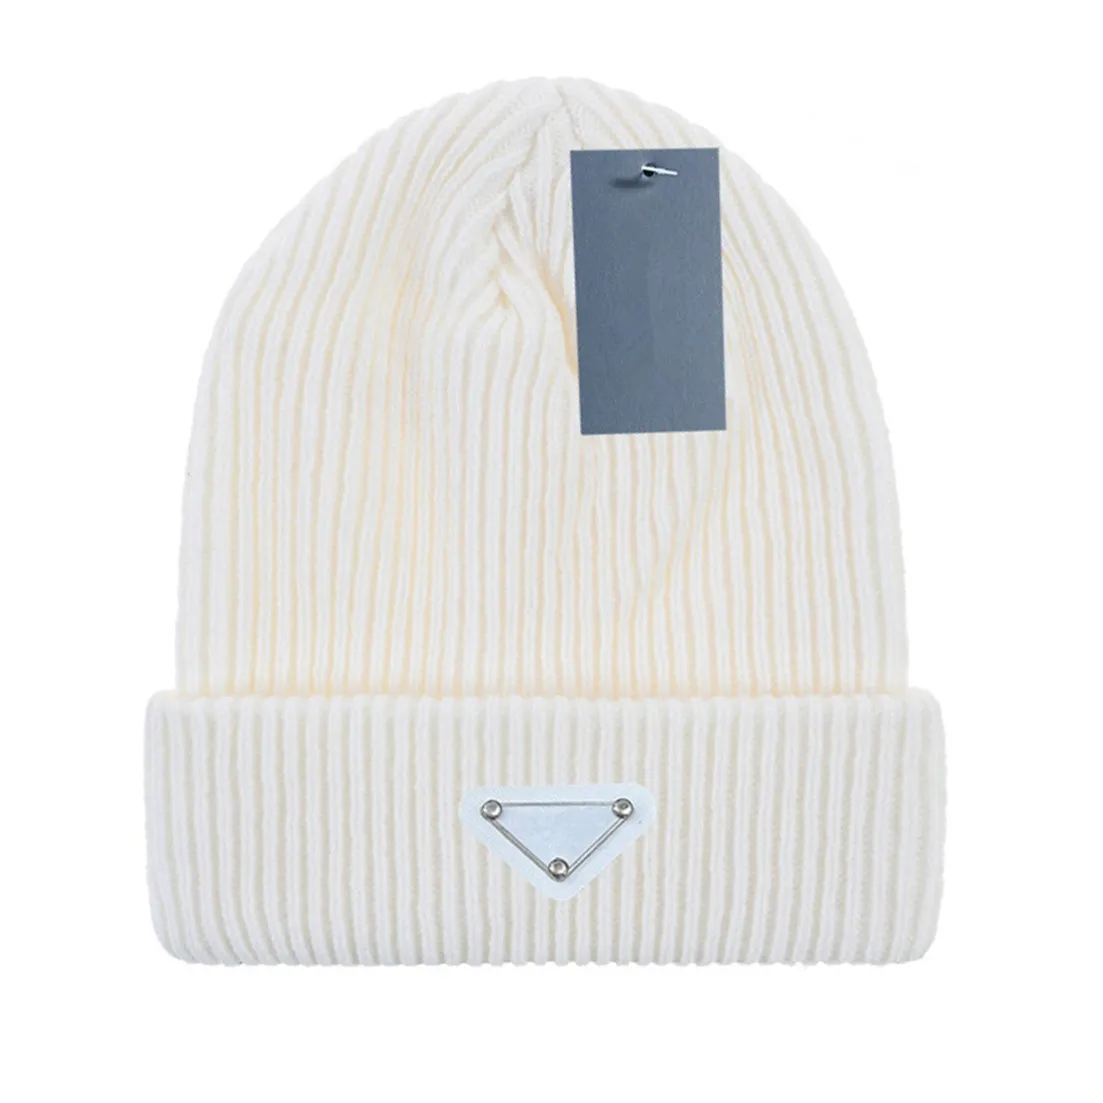 Nuovi berretti di lusso firmati Inverno uomo e donna Fashion design cappelli in maglia autunno cappello di lana capunisex caldo P-9 F-9